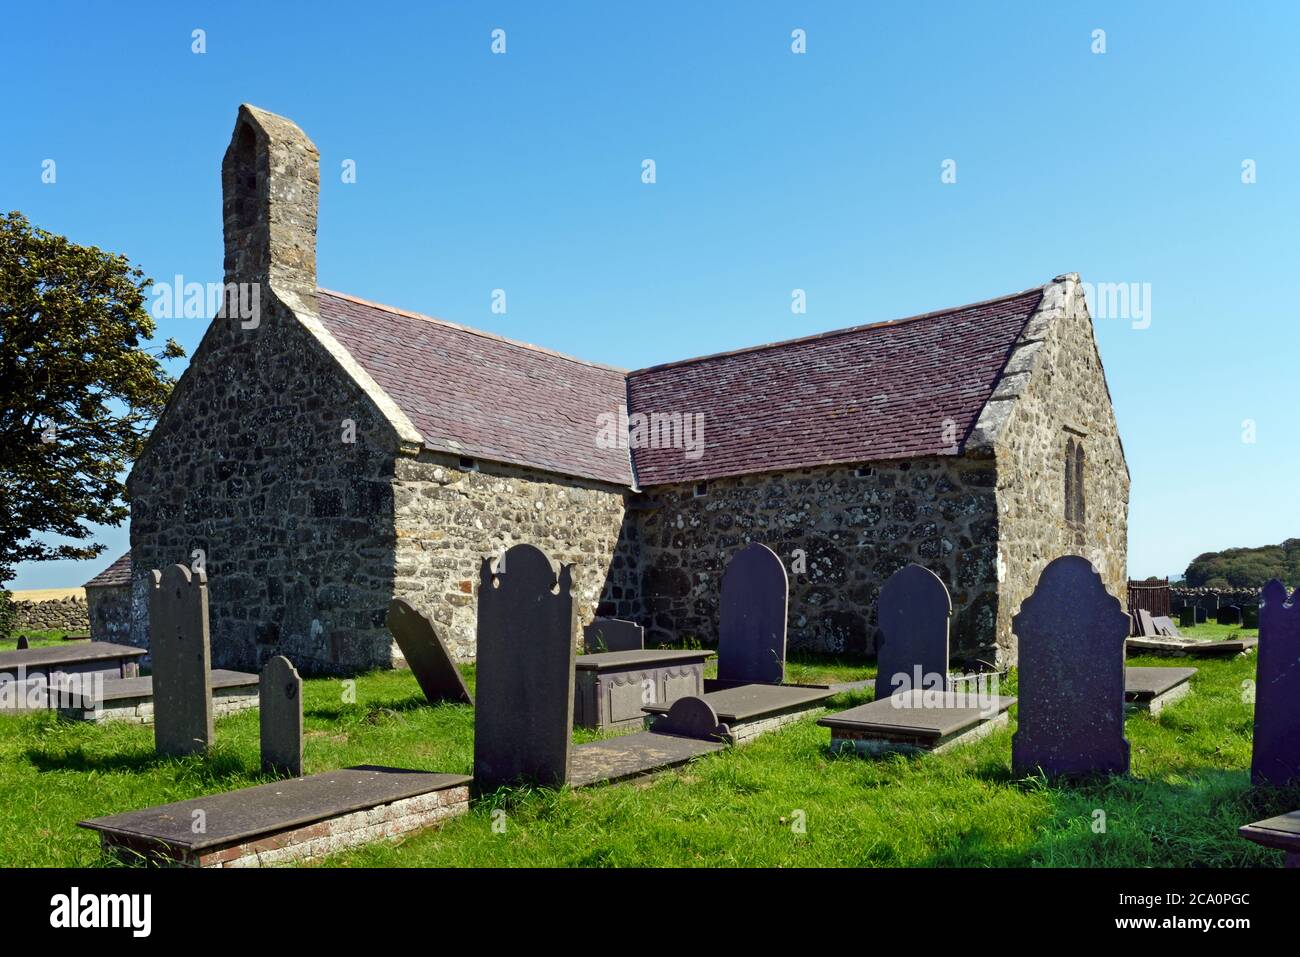 Diese fantasievolle, gruselige Kirche basiert auf der St. Baglan's Church, Llanfaglan, Nordwales Sie ist mittelalterlich und stammt aus dem 13. Jahrhundert. Stockfoto